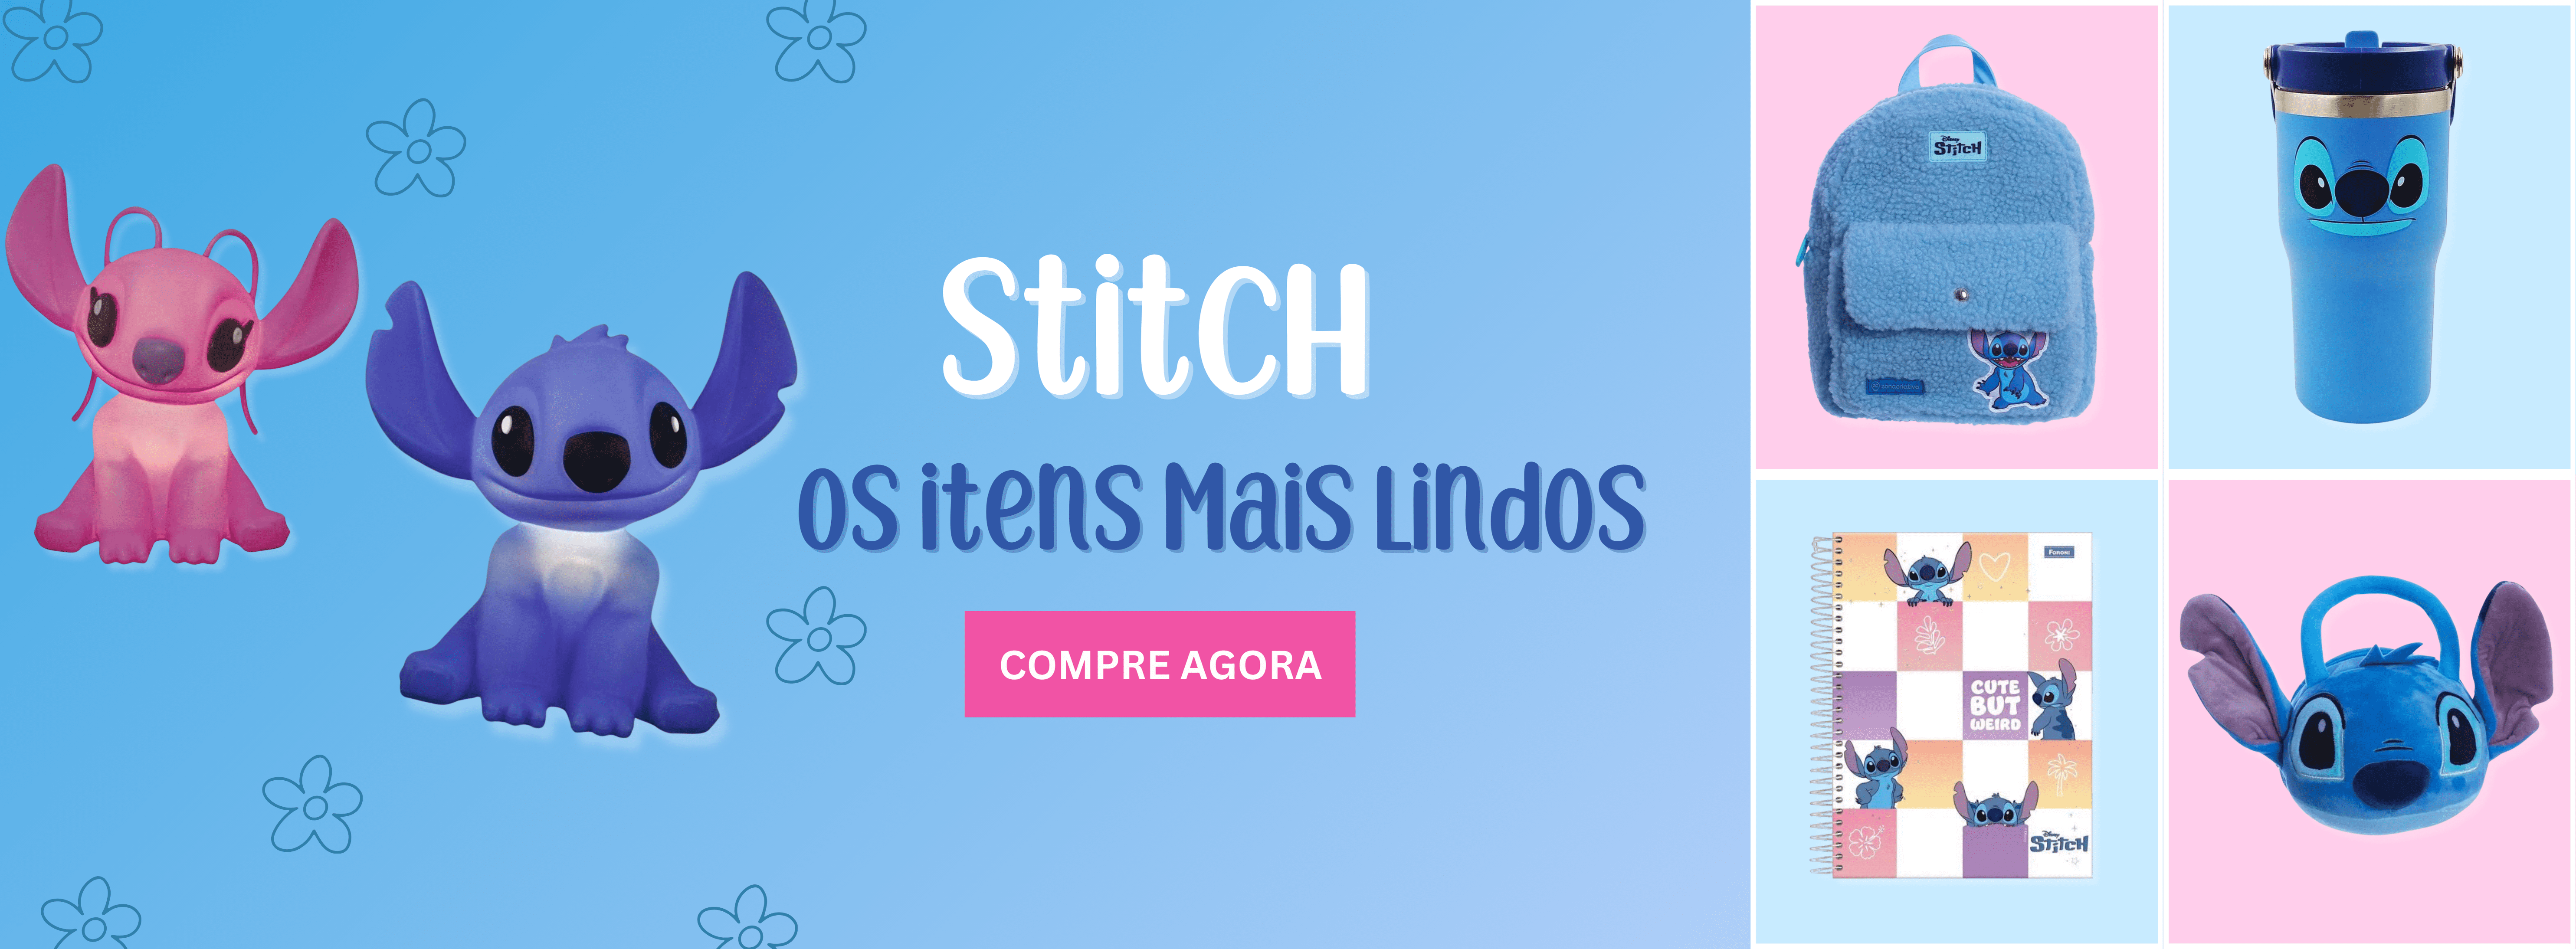 banner-stitch